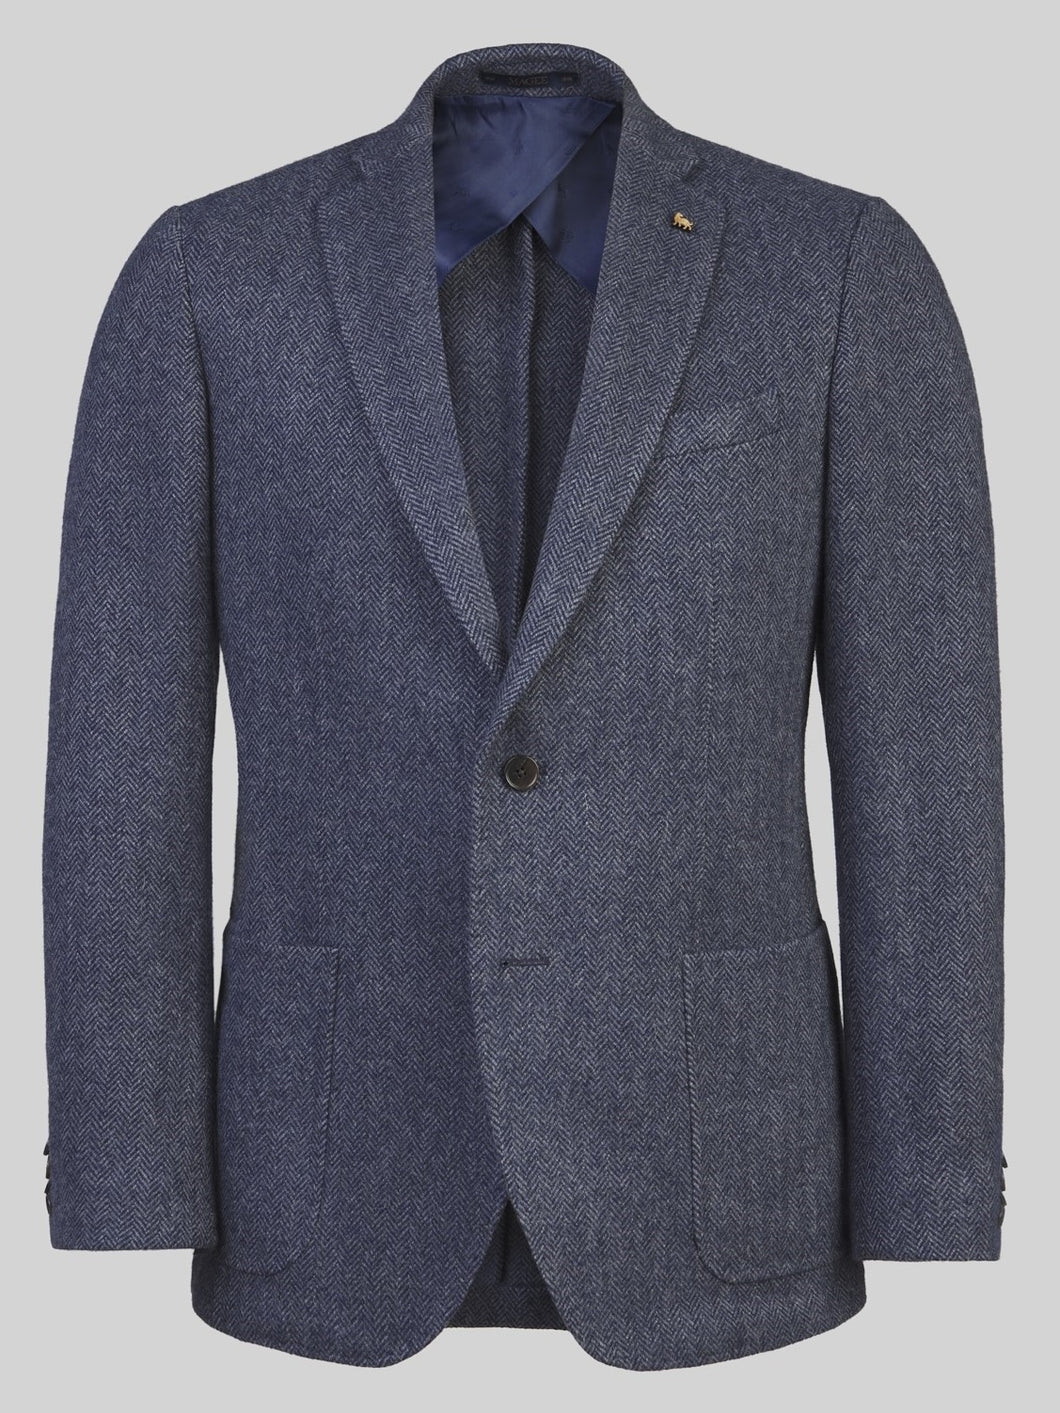 MAGEE Donegal Tweed Blazer - Mens Easky Patch Pocket - Blue & Grey Herringbone